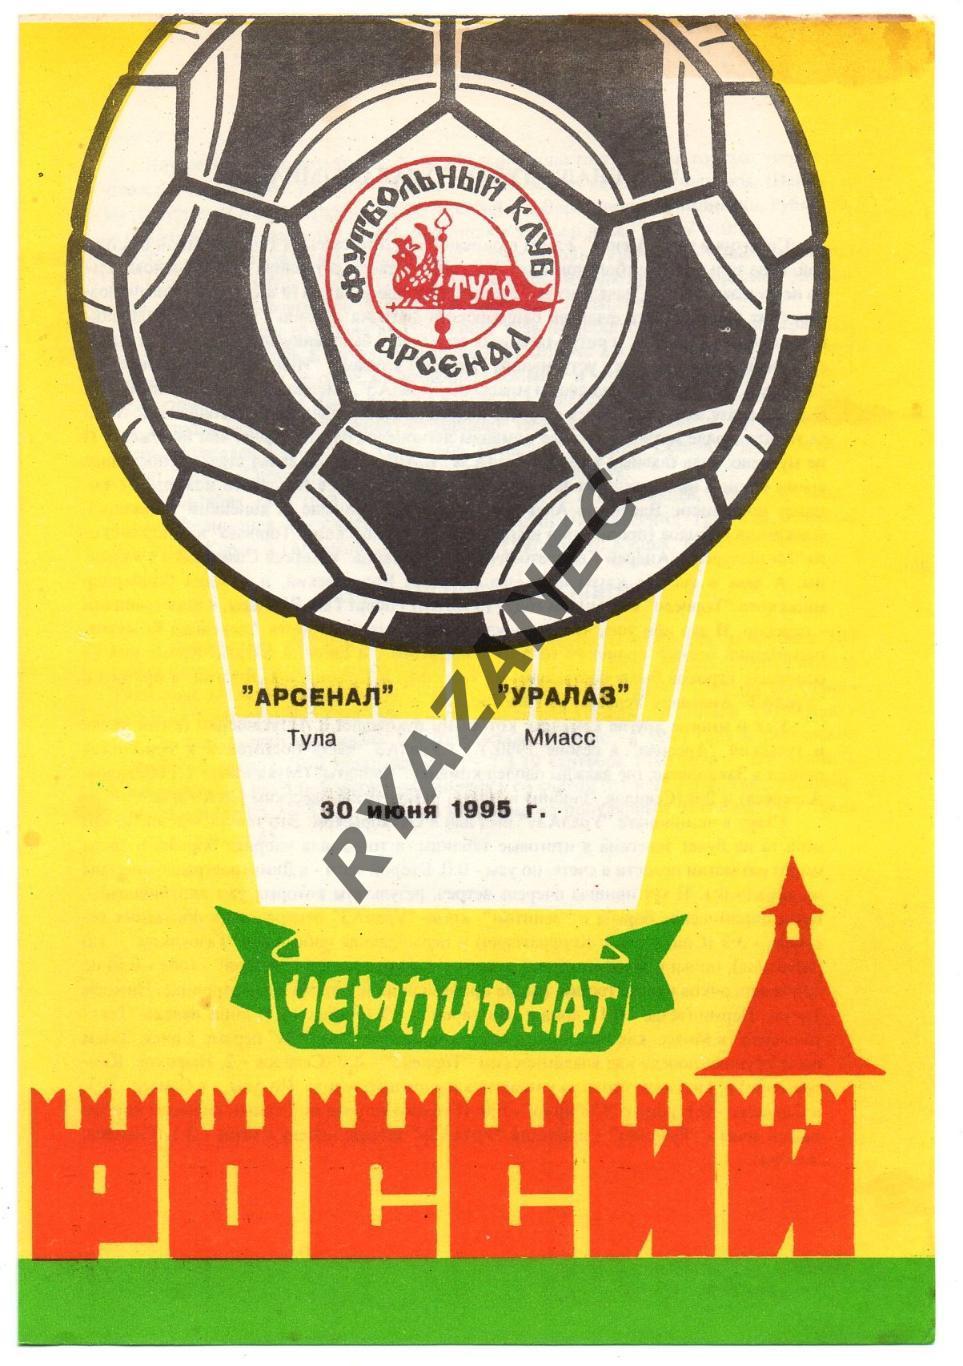 Футбол. Арсенал (Тула) - Уралаз (Миасс) - 30.06.1995